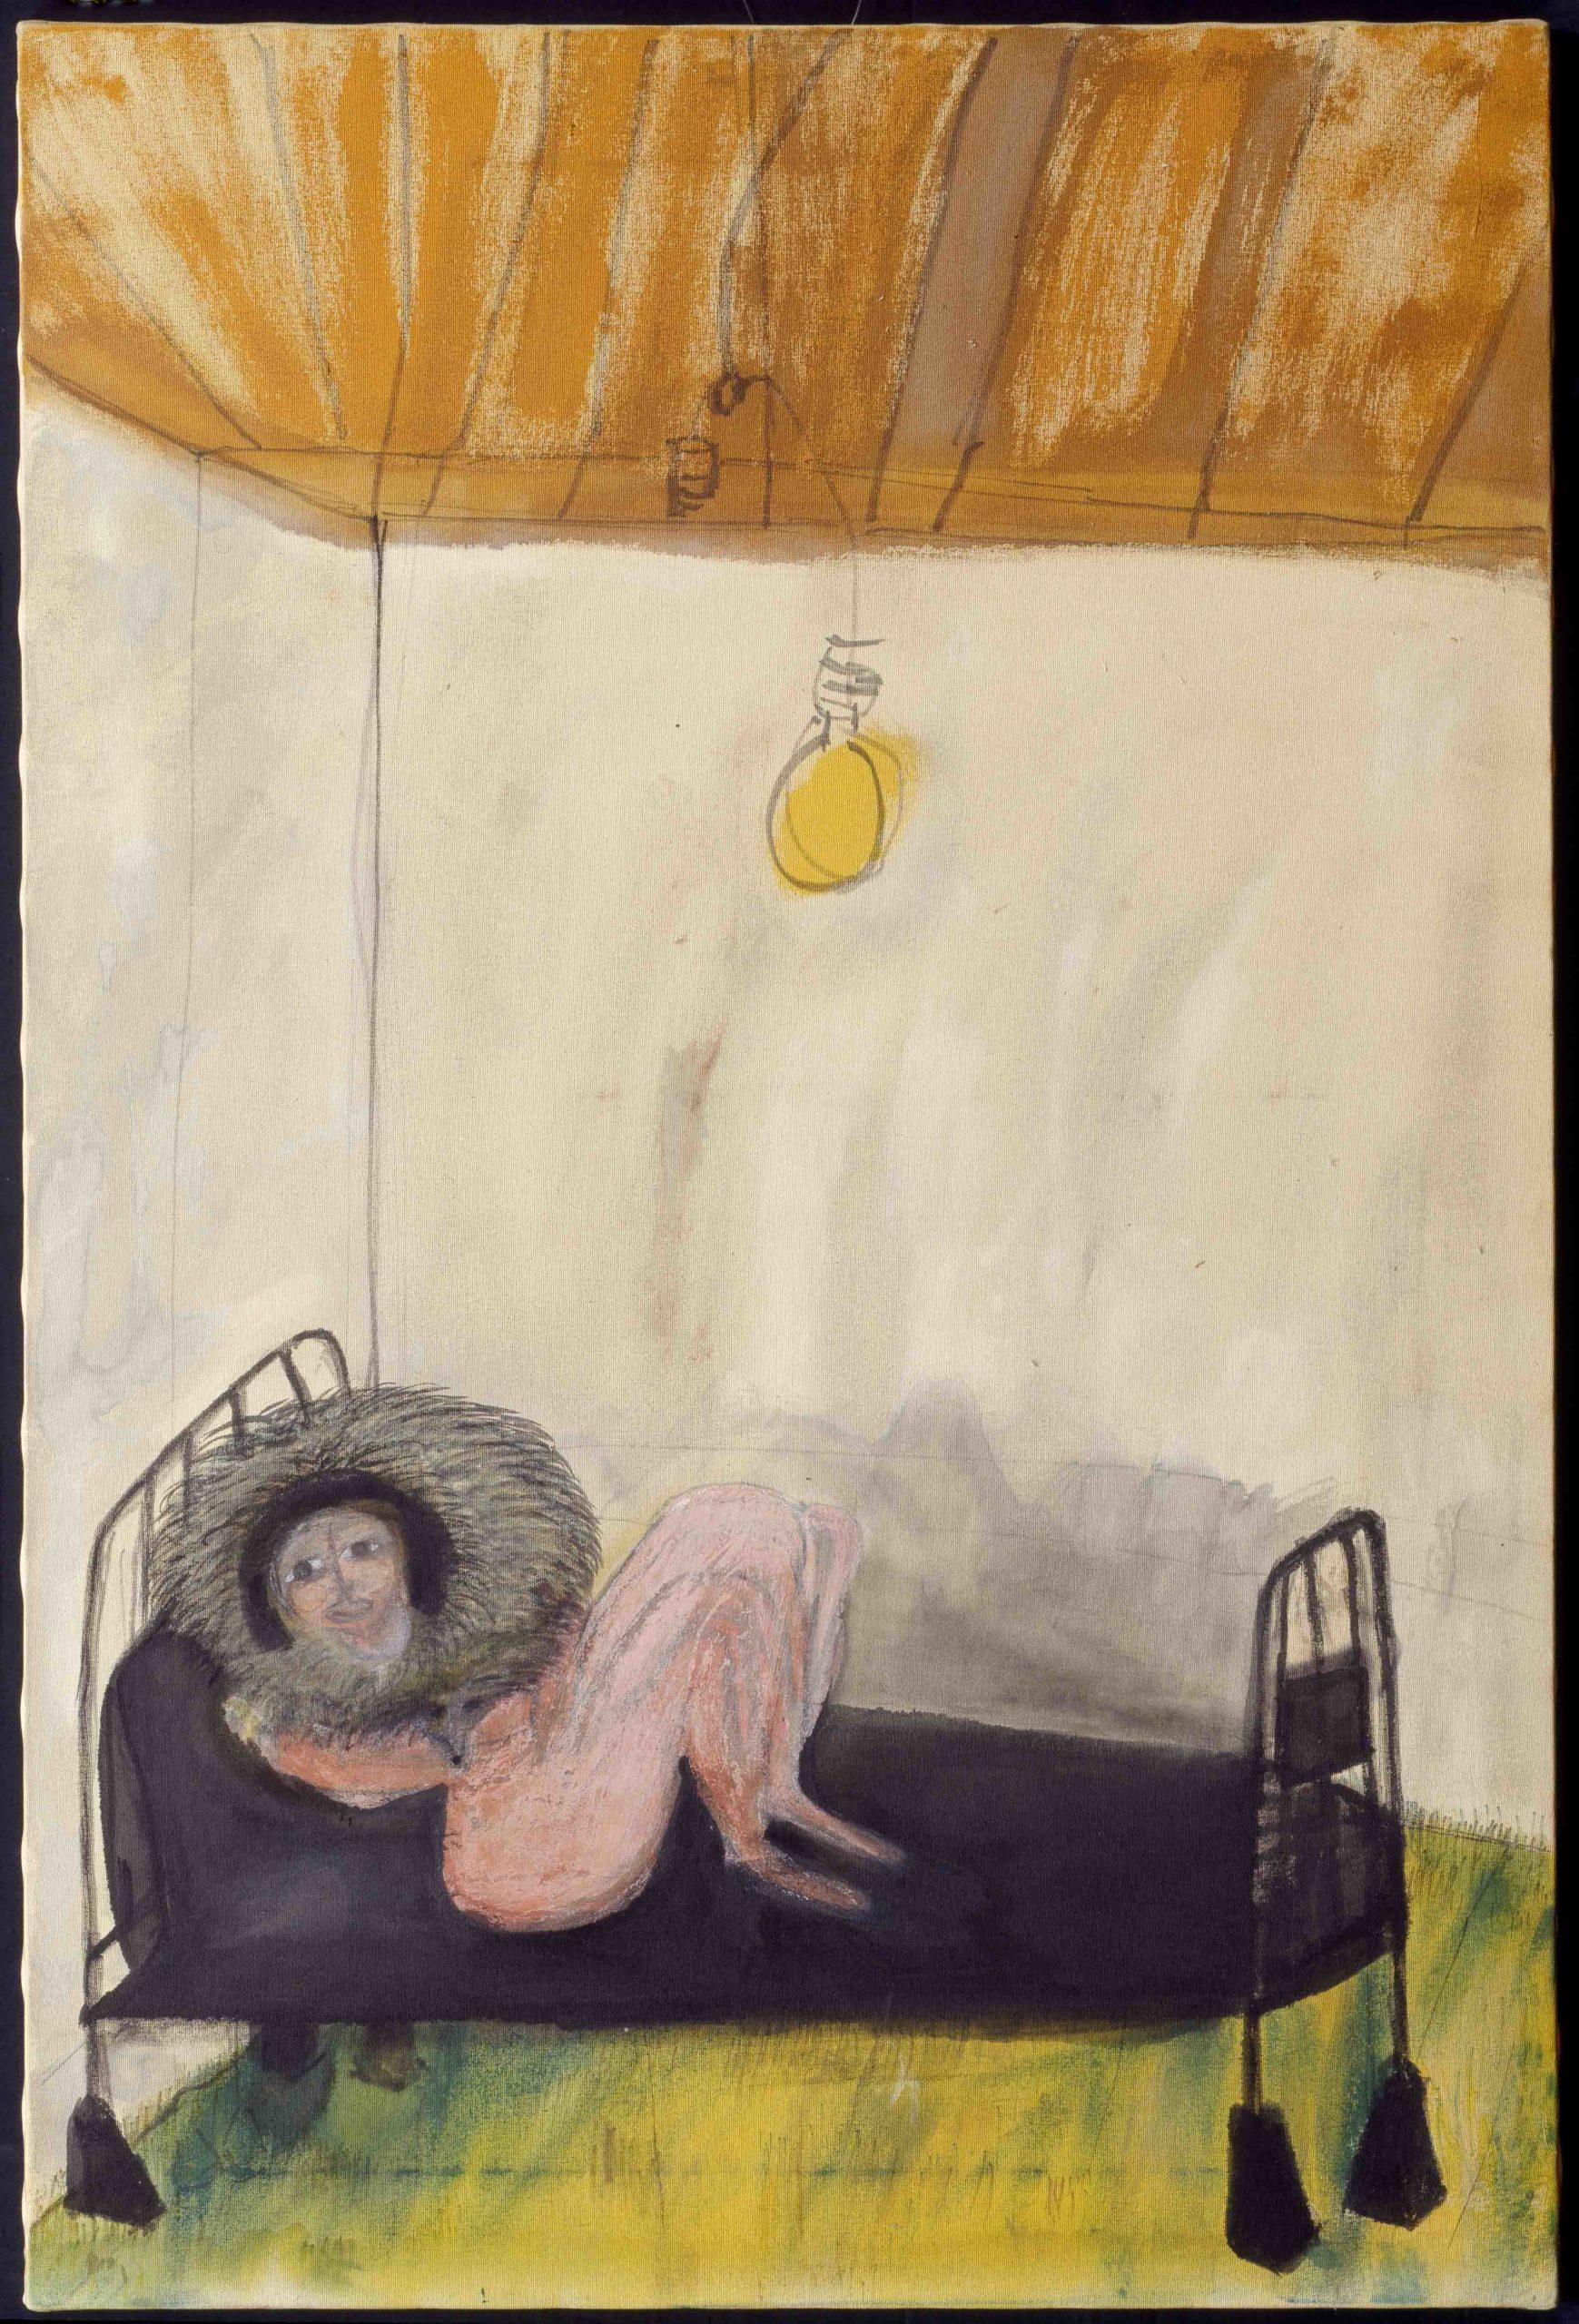 Carol Rama, Appassionata, 1980, pennarello e tecnica mista su tela da capote beige, 120 x 80 cm